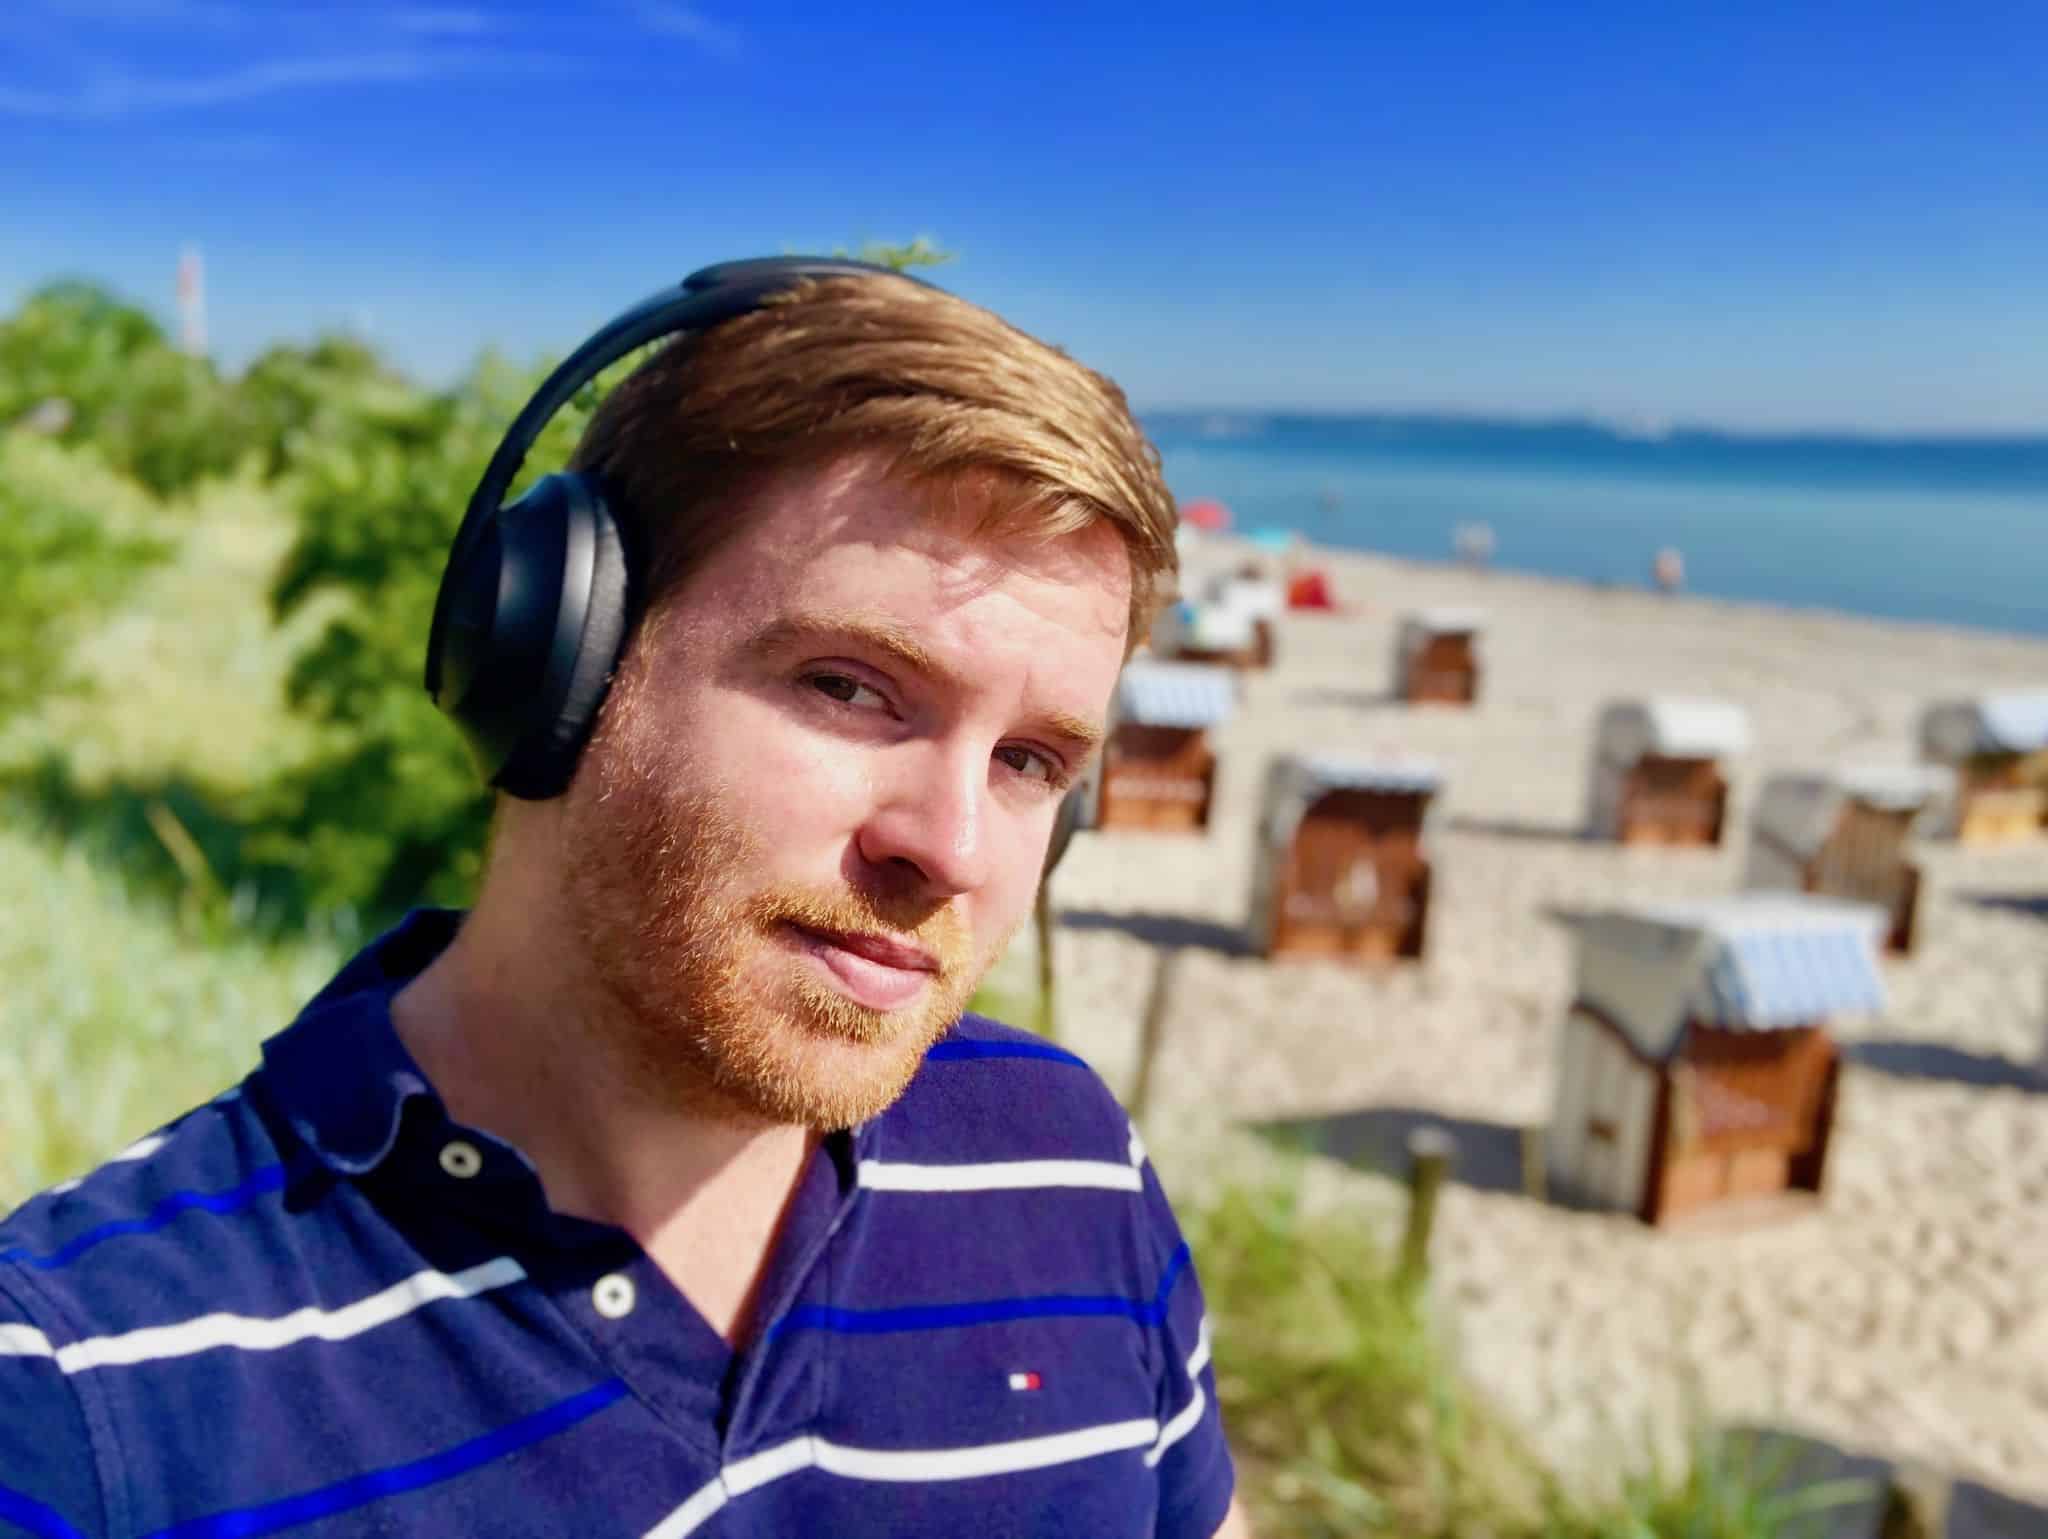 Bose Noise Cancelling Headphones 700 Test: perfekter Sound auf Reisen und im Alltag?